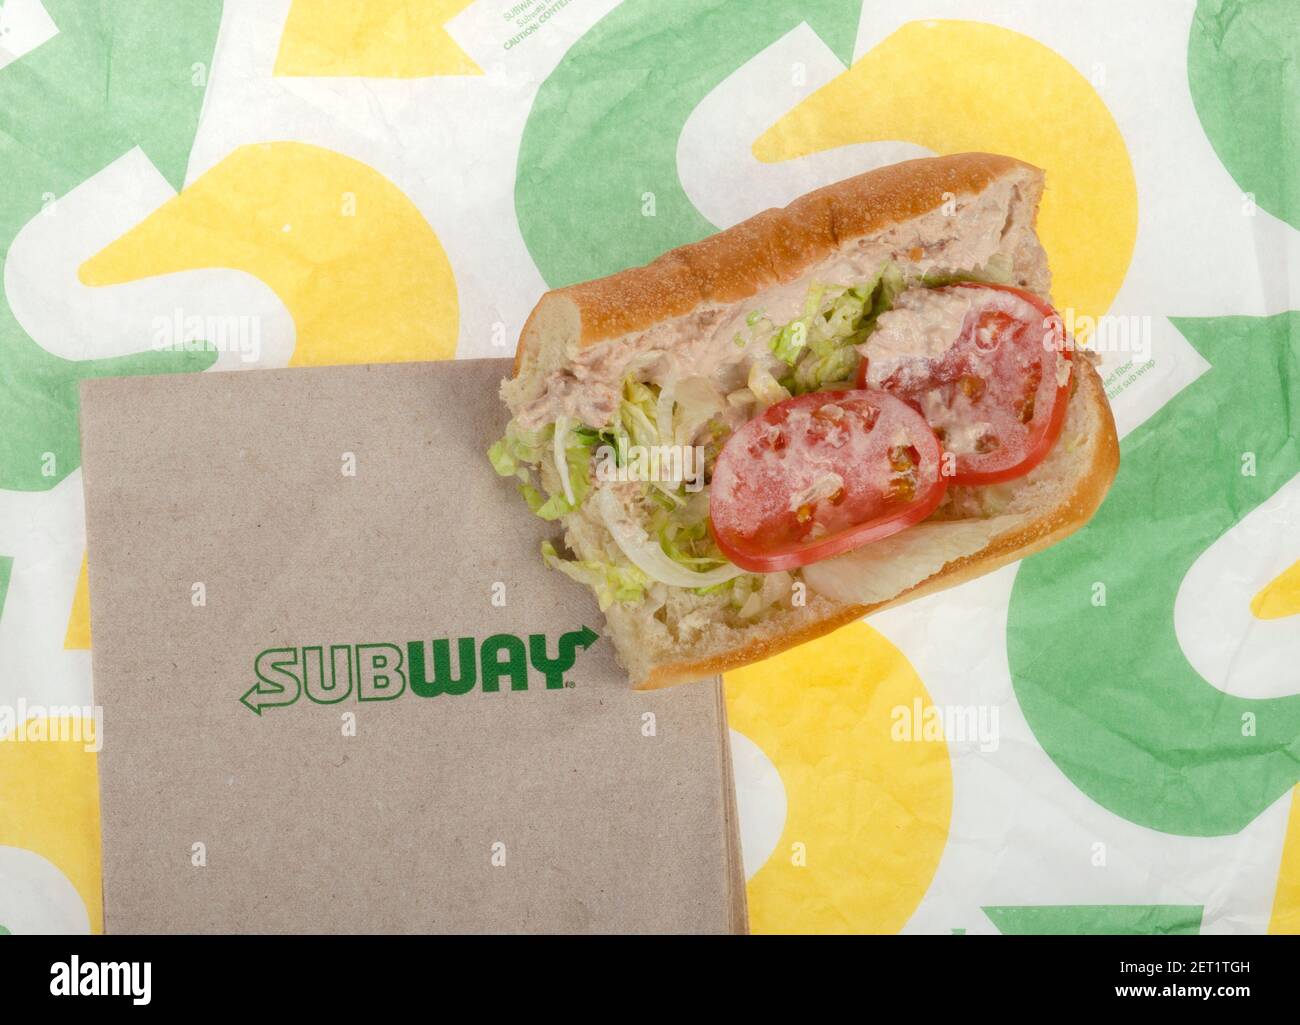 Subway tonno Sub con lattuga e pomodoro sulla confezione Foto Stock